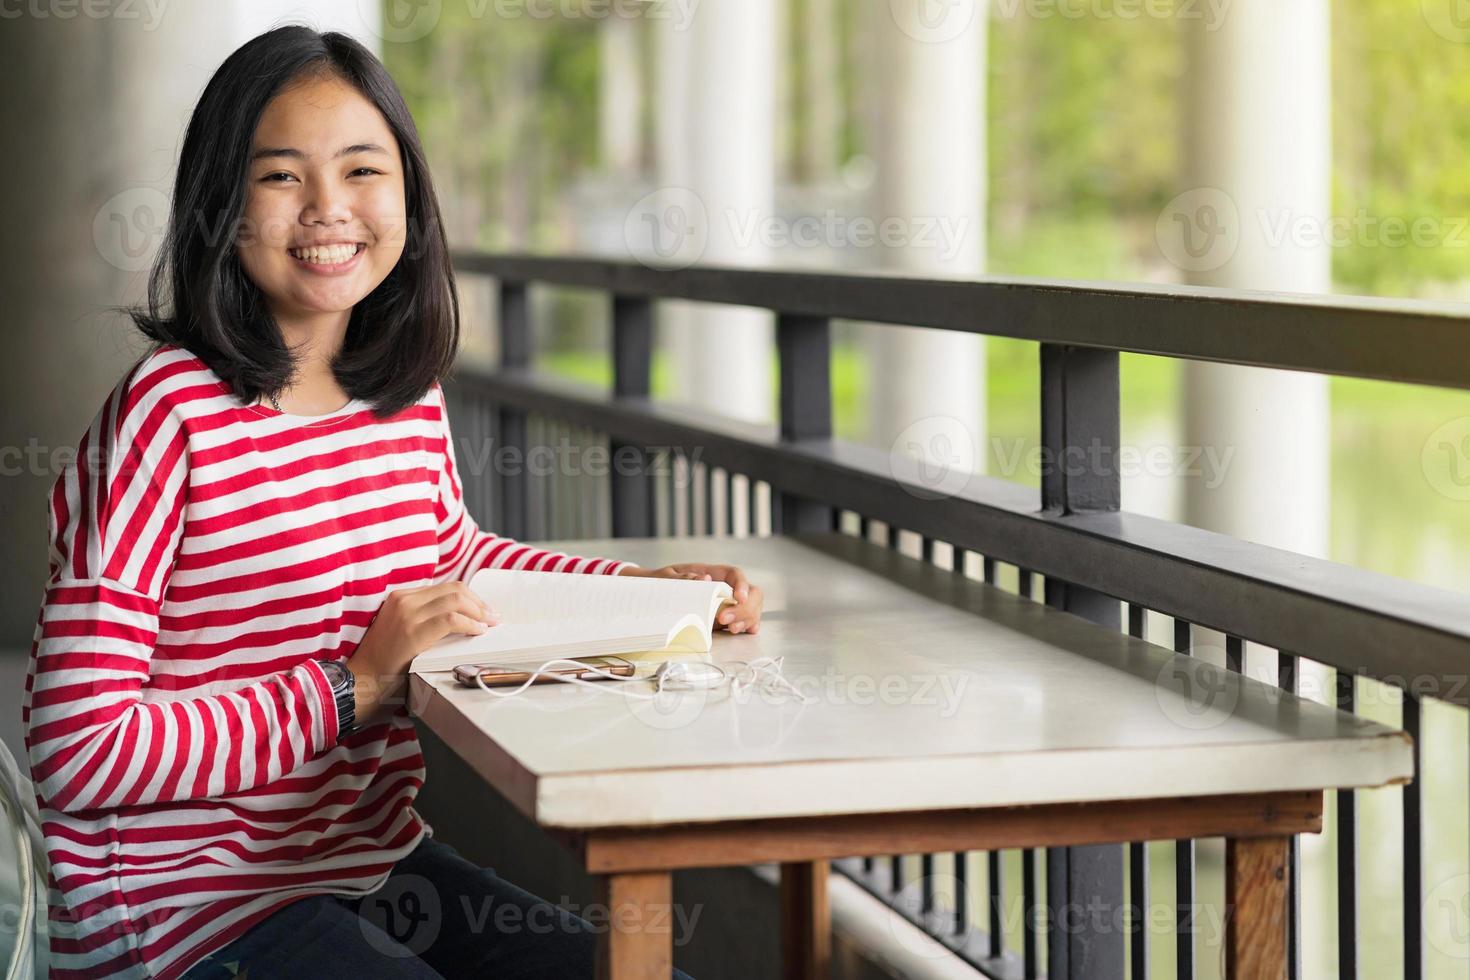 étudiante asiatique assise et souriante en lisant un livre à l'école photo